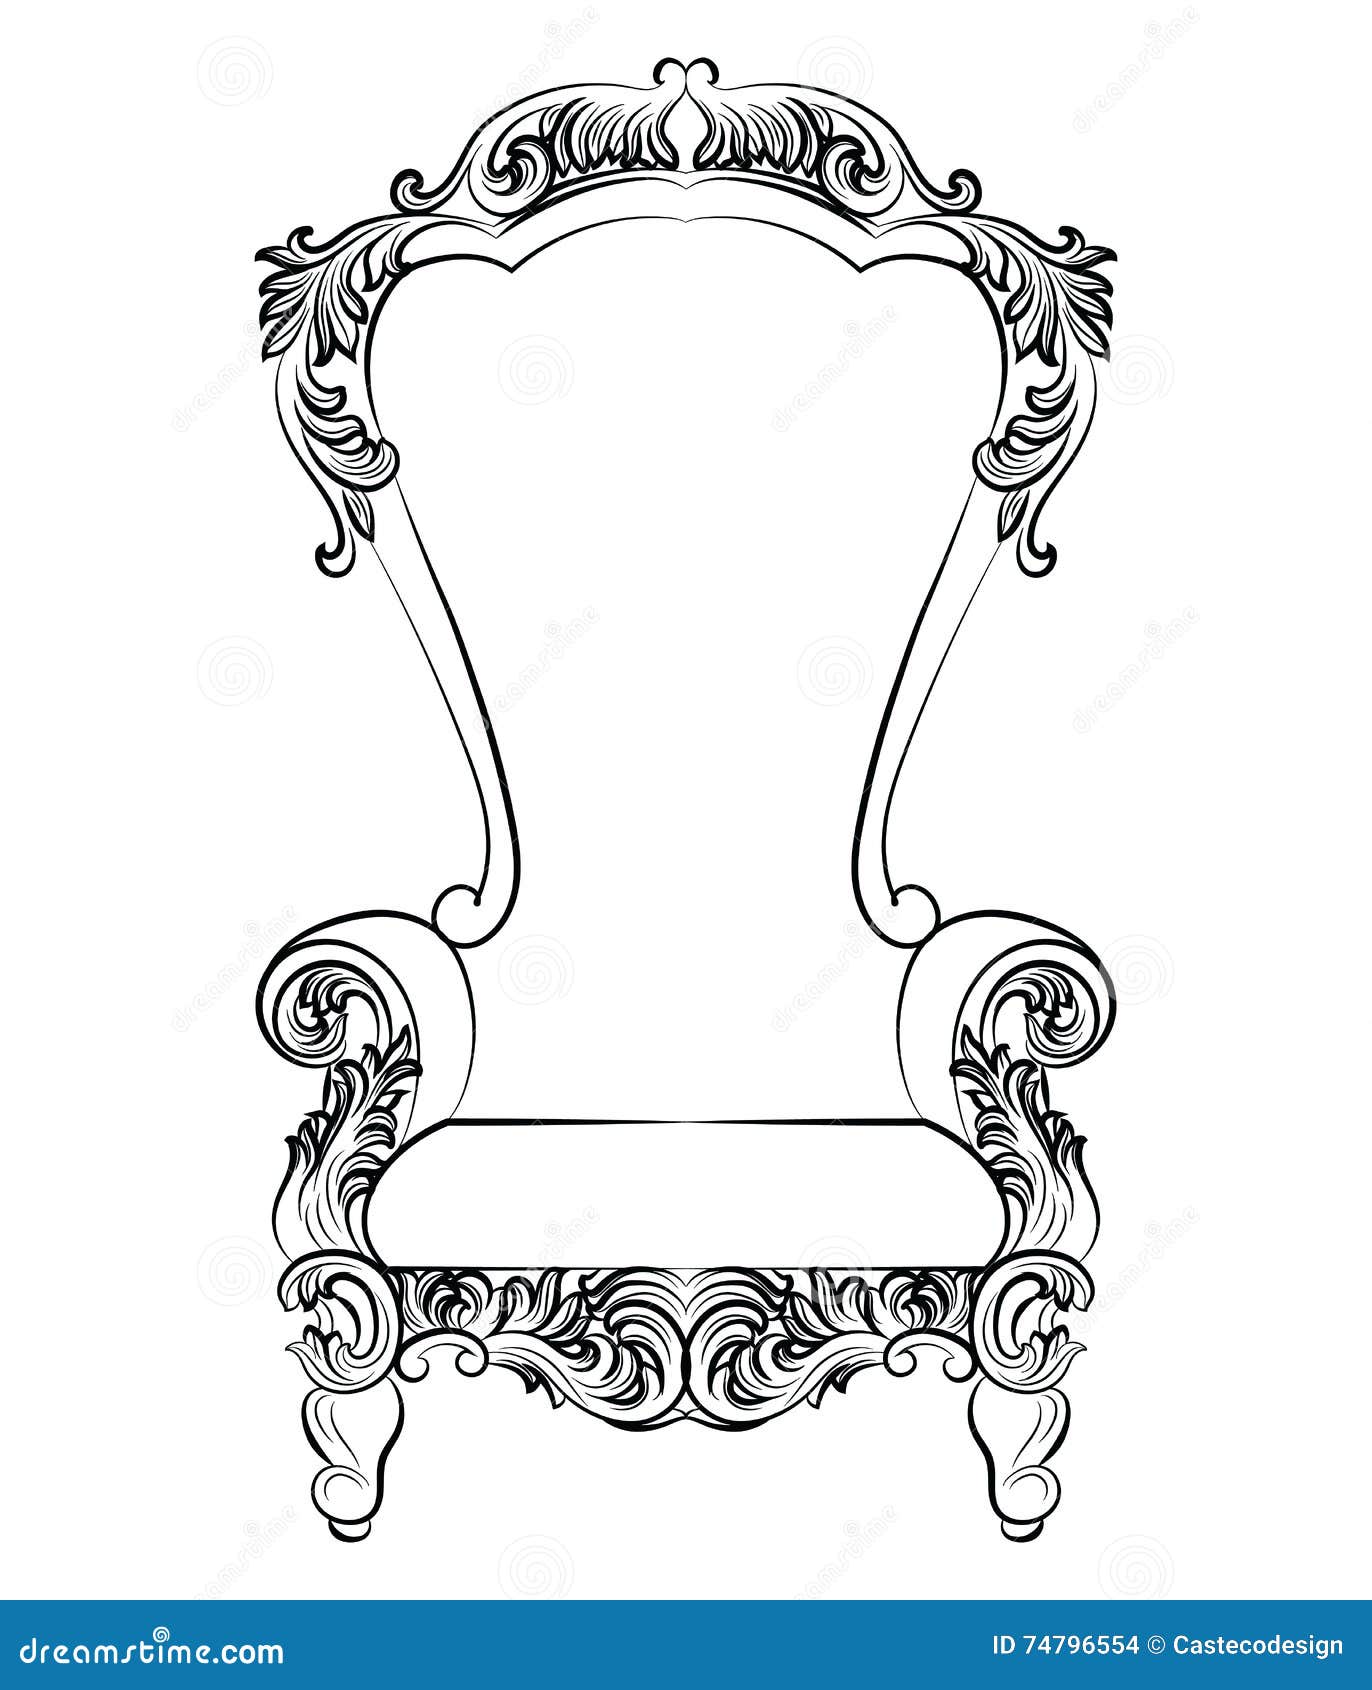 Rococo | brannonidh1830 | Rococo style, Rococo furniture, Rococo